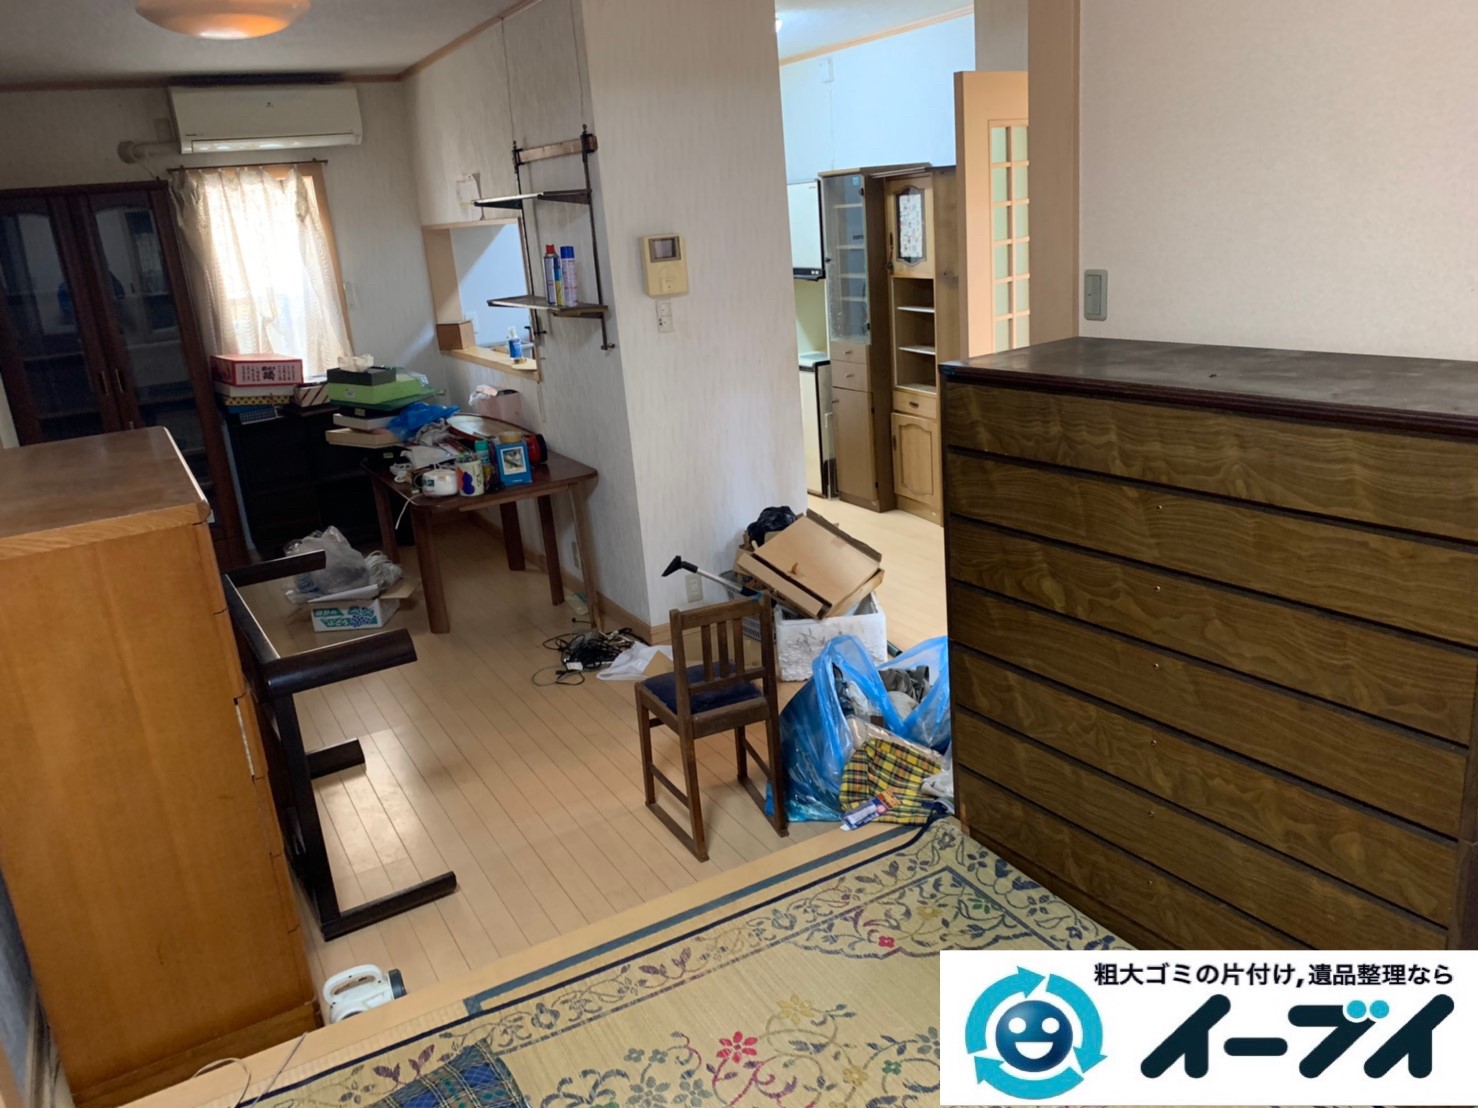 2019年９月２７日大阪府大阪市港区で退去に伴い、お家の家財道具を一式処分させていただきました。写真1